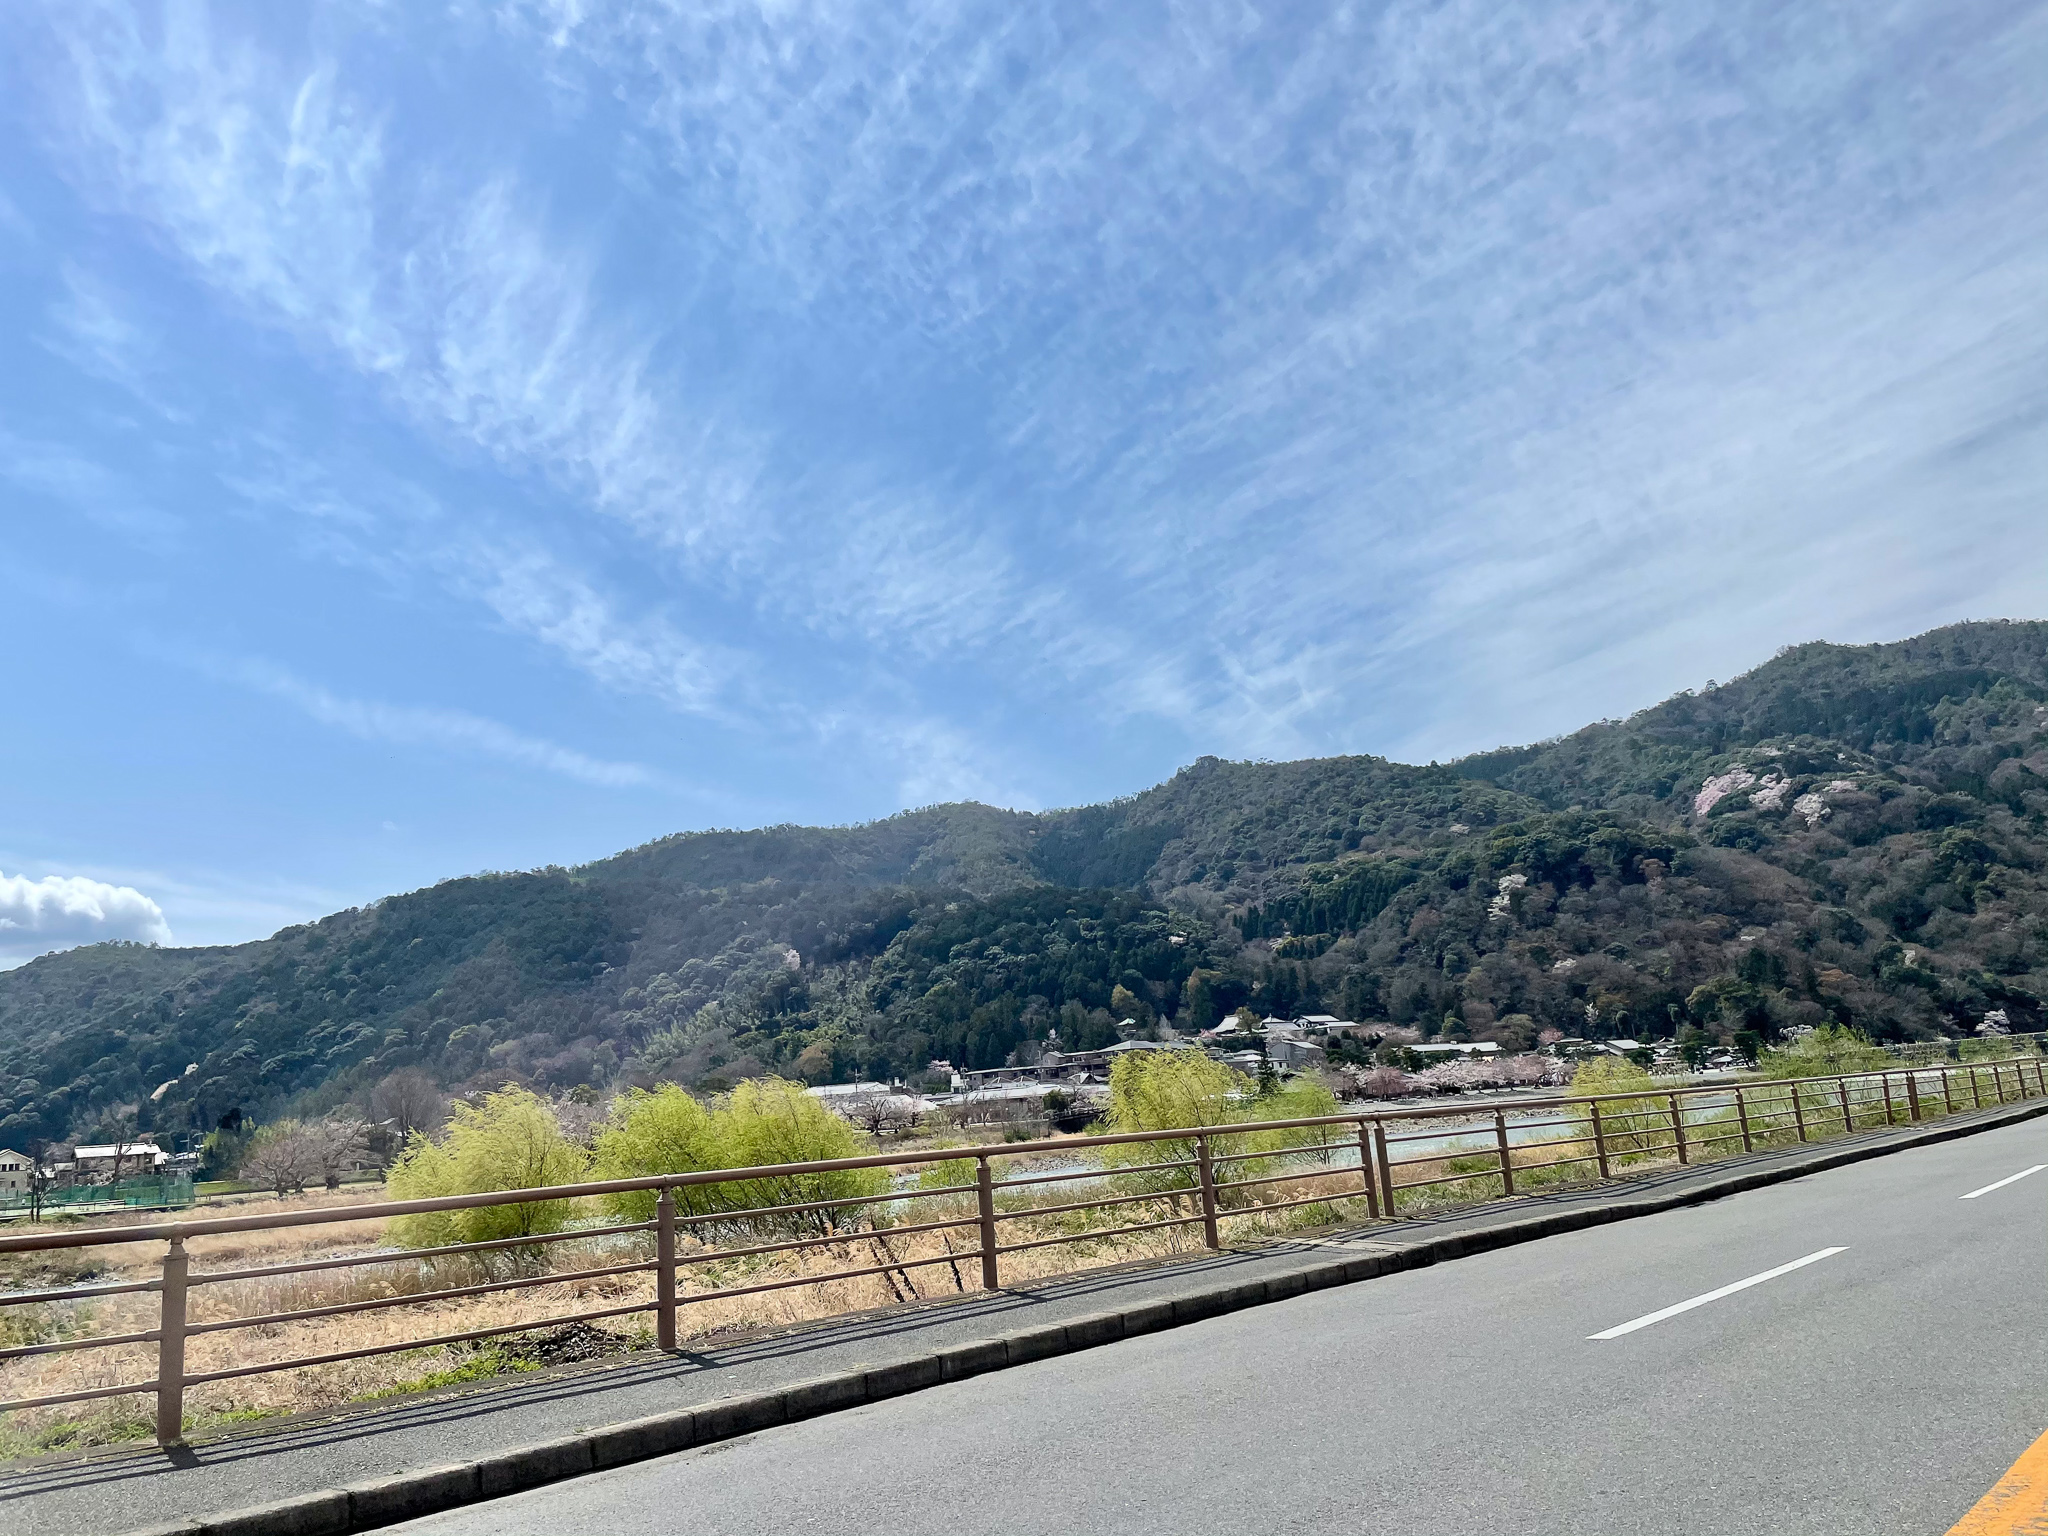 Road trip in Japan